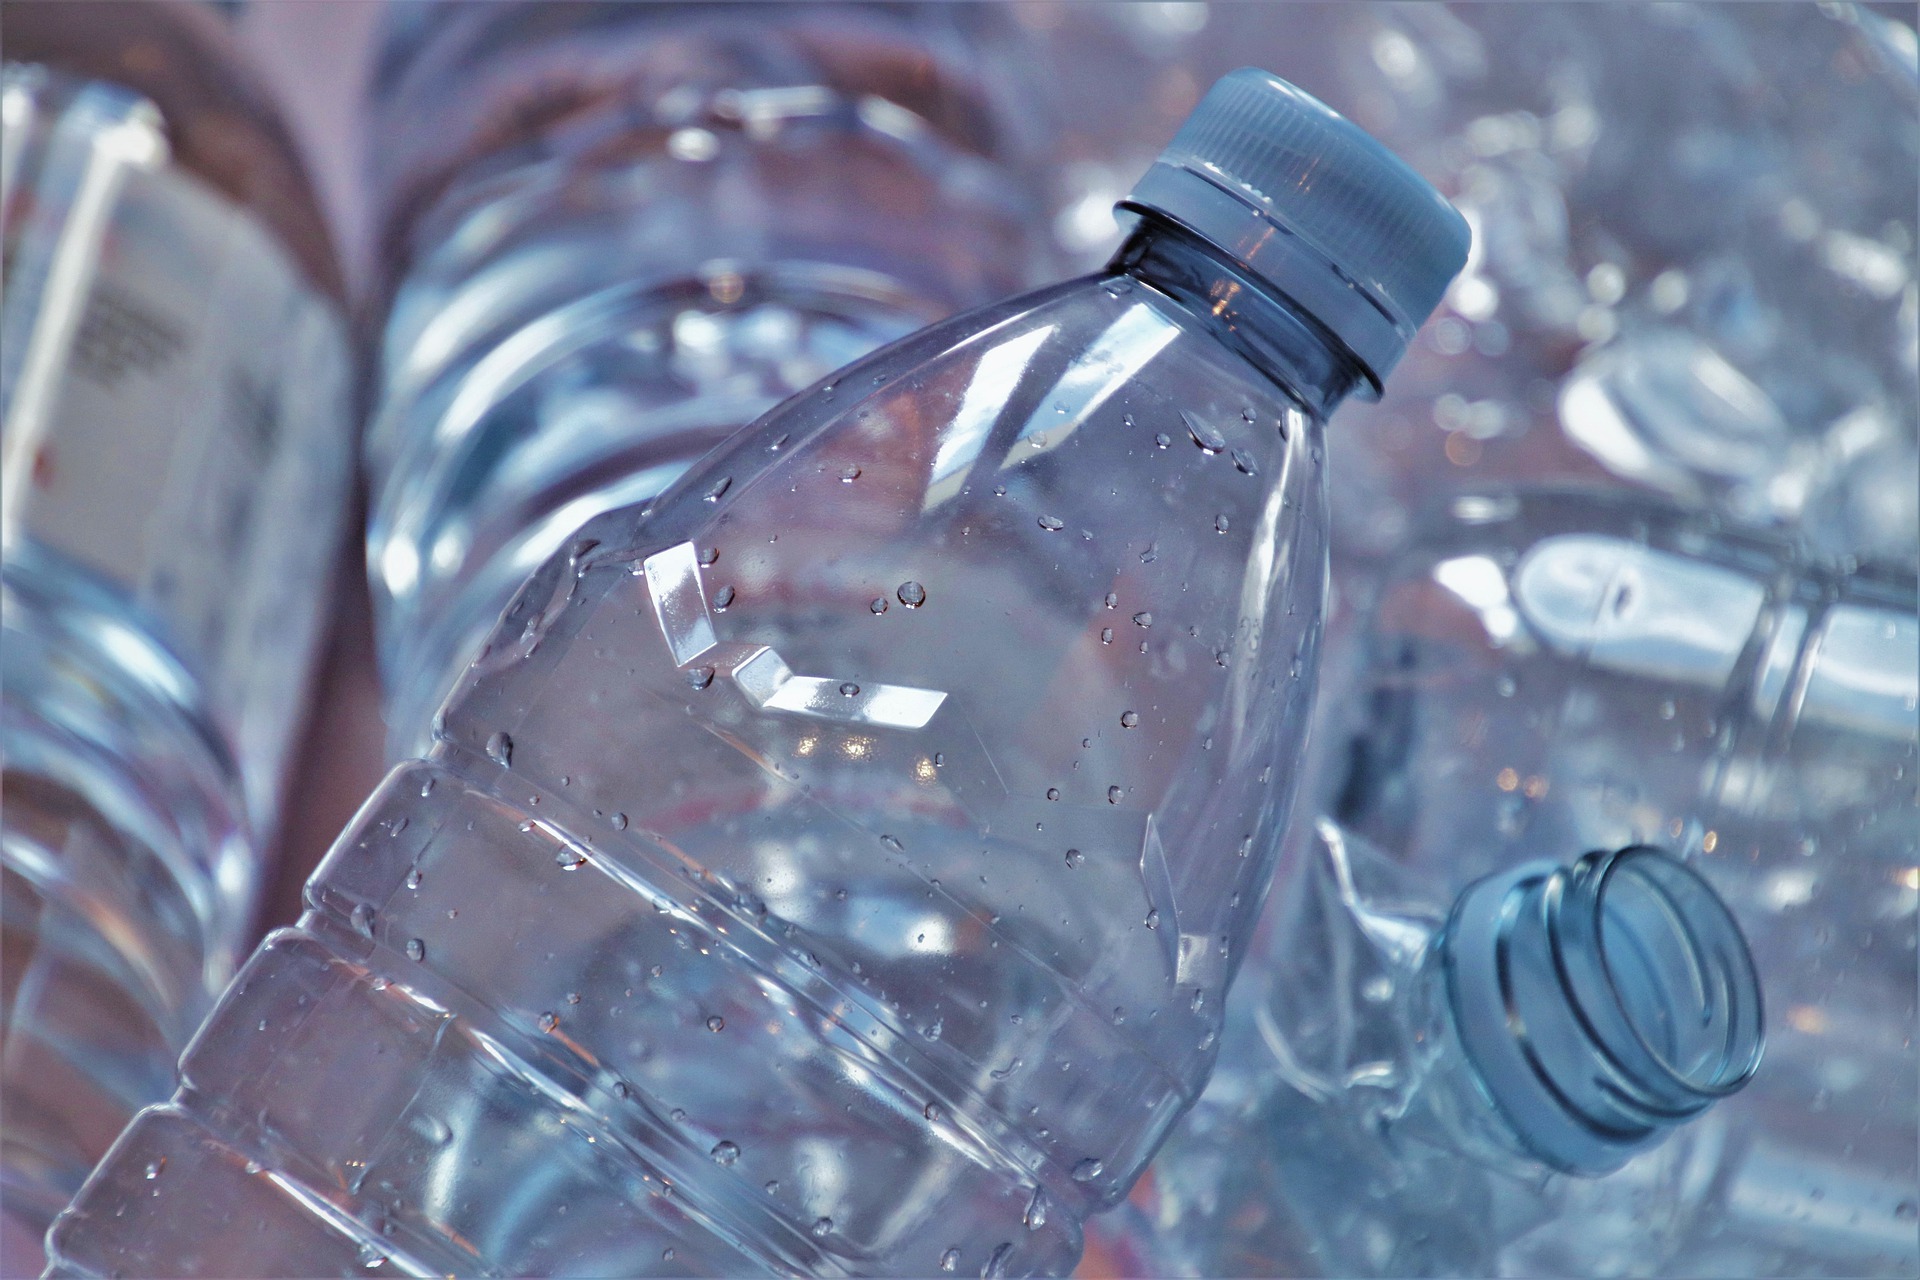 Por qué reciclamos tapones de plástico?